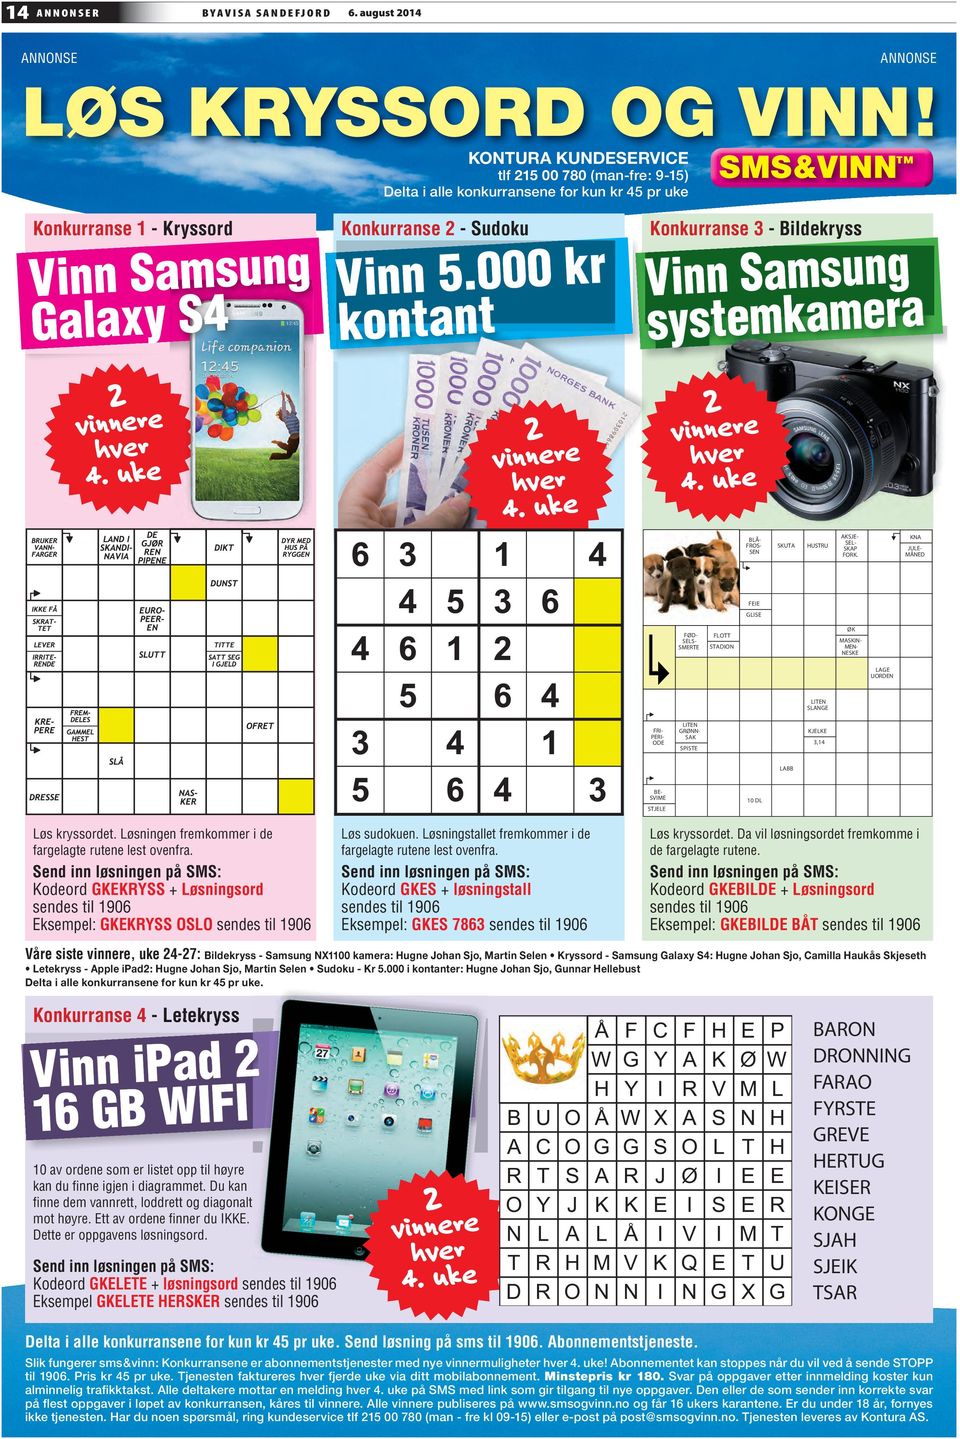 000 kontant Konkurranse 3 - Bildeyss Vinn Samsung systemkamera 2 vinnere hver 4. uke 2 vinnere hver 4. uke 2 vinnere hver 4. uke BLÅ- FROS- SEN SKUTA HUSTRU AKSJE- SEL- SKAP FORK.